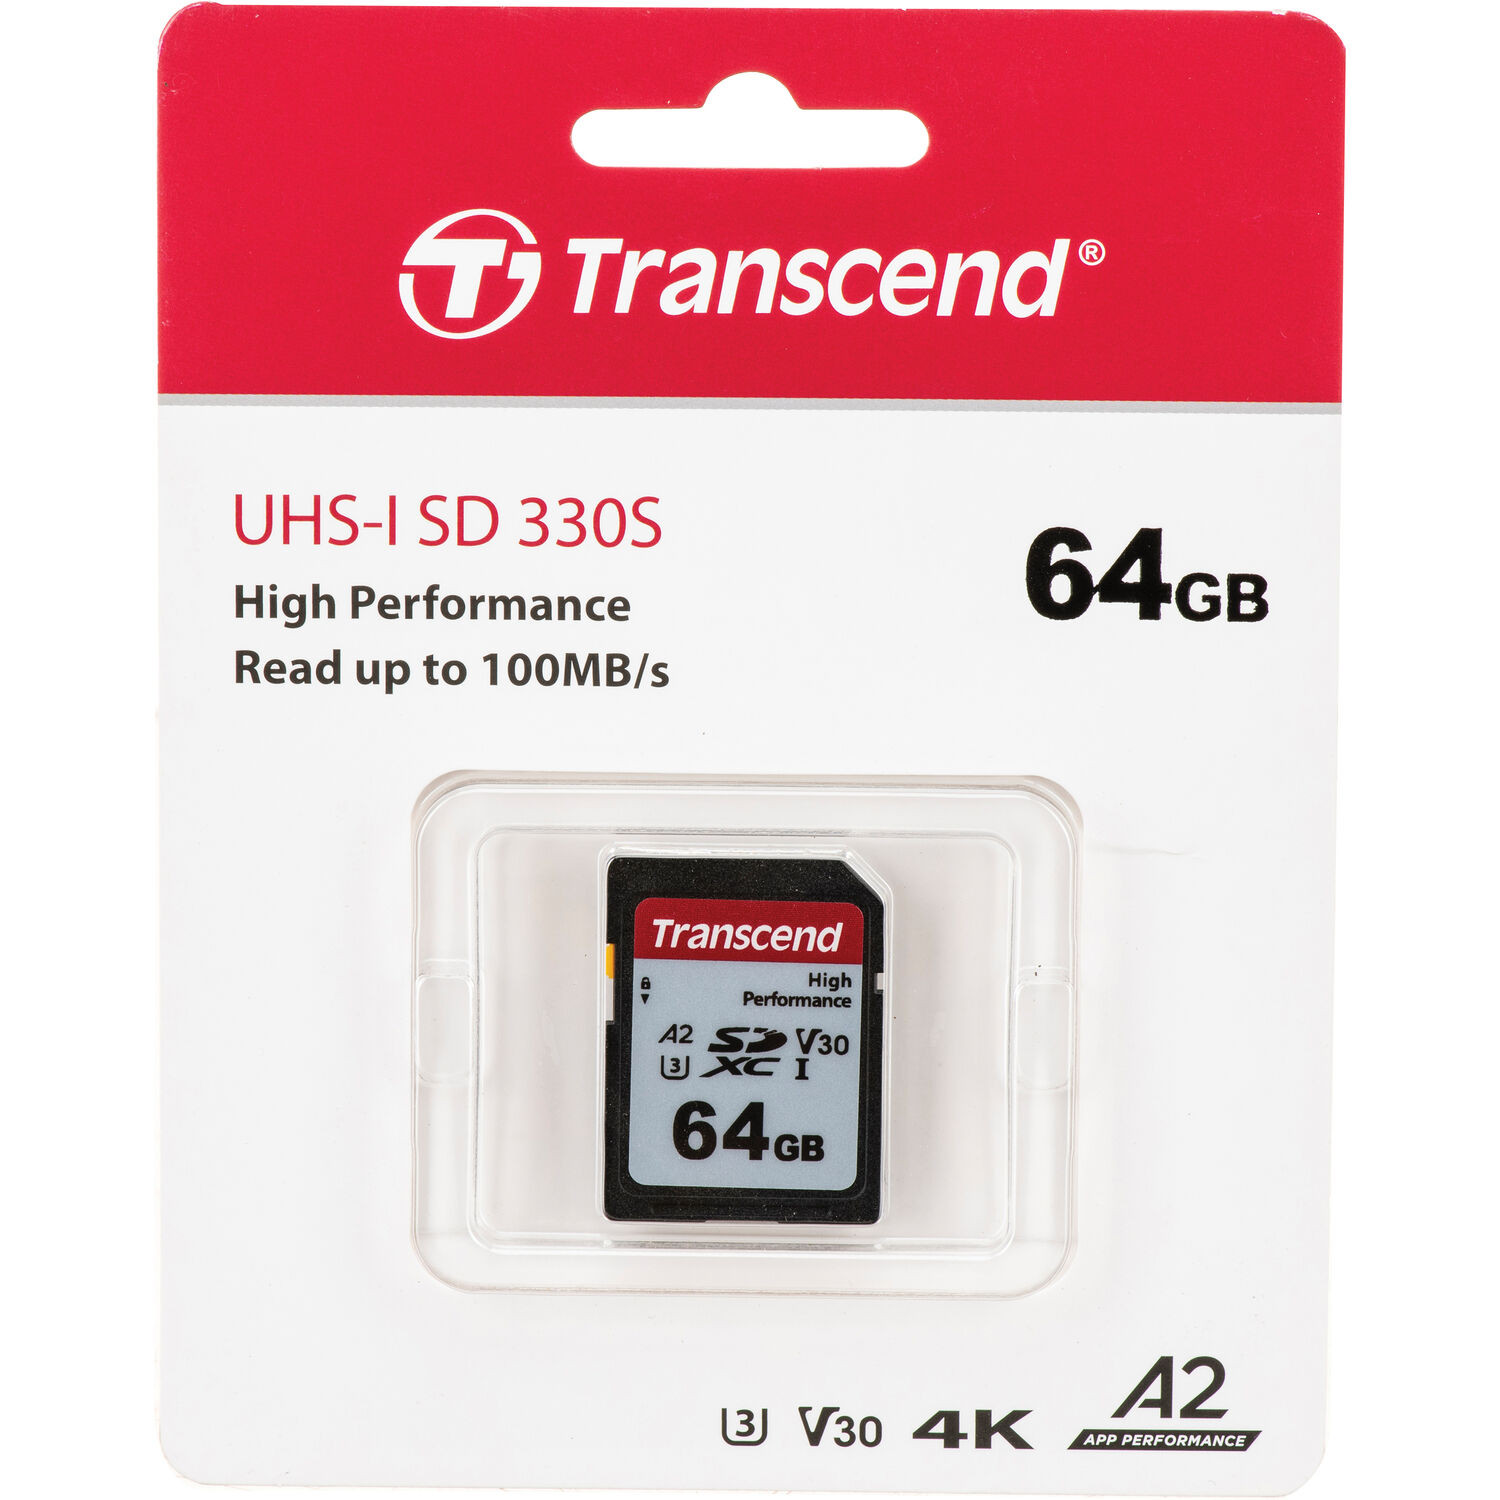 Imagen Memoria Transcend deb 64GB SDXC 330S UHS-I Clase 10